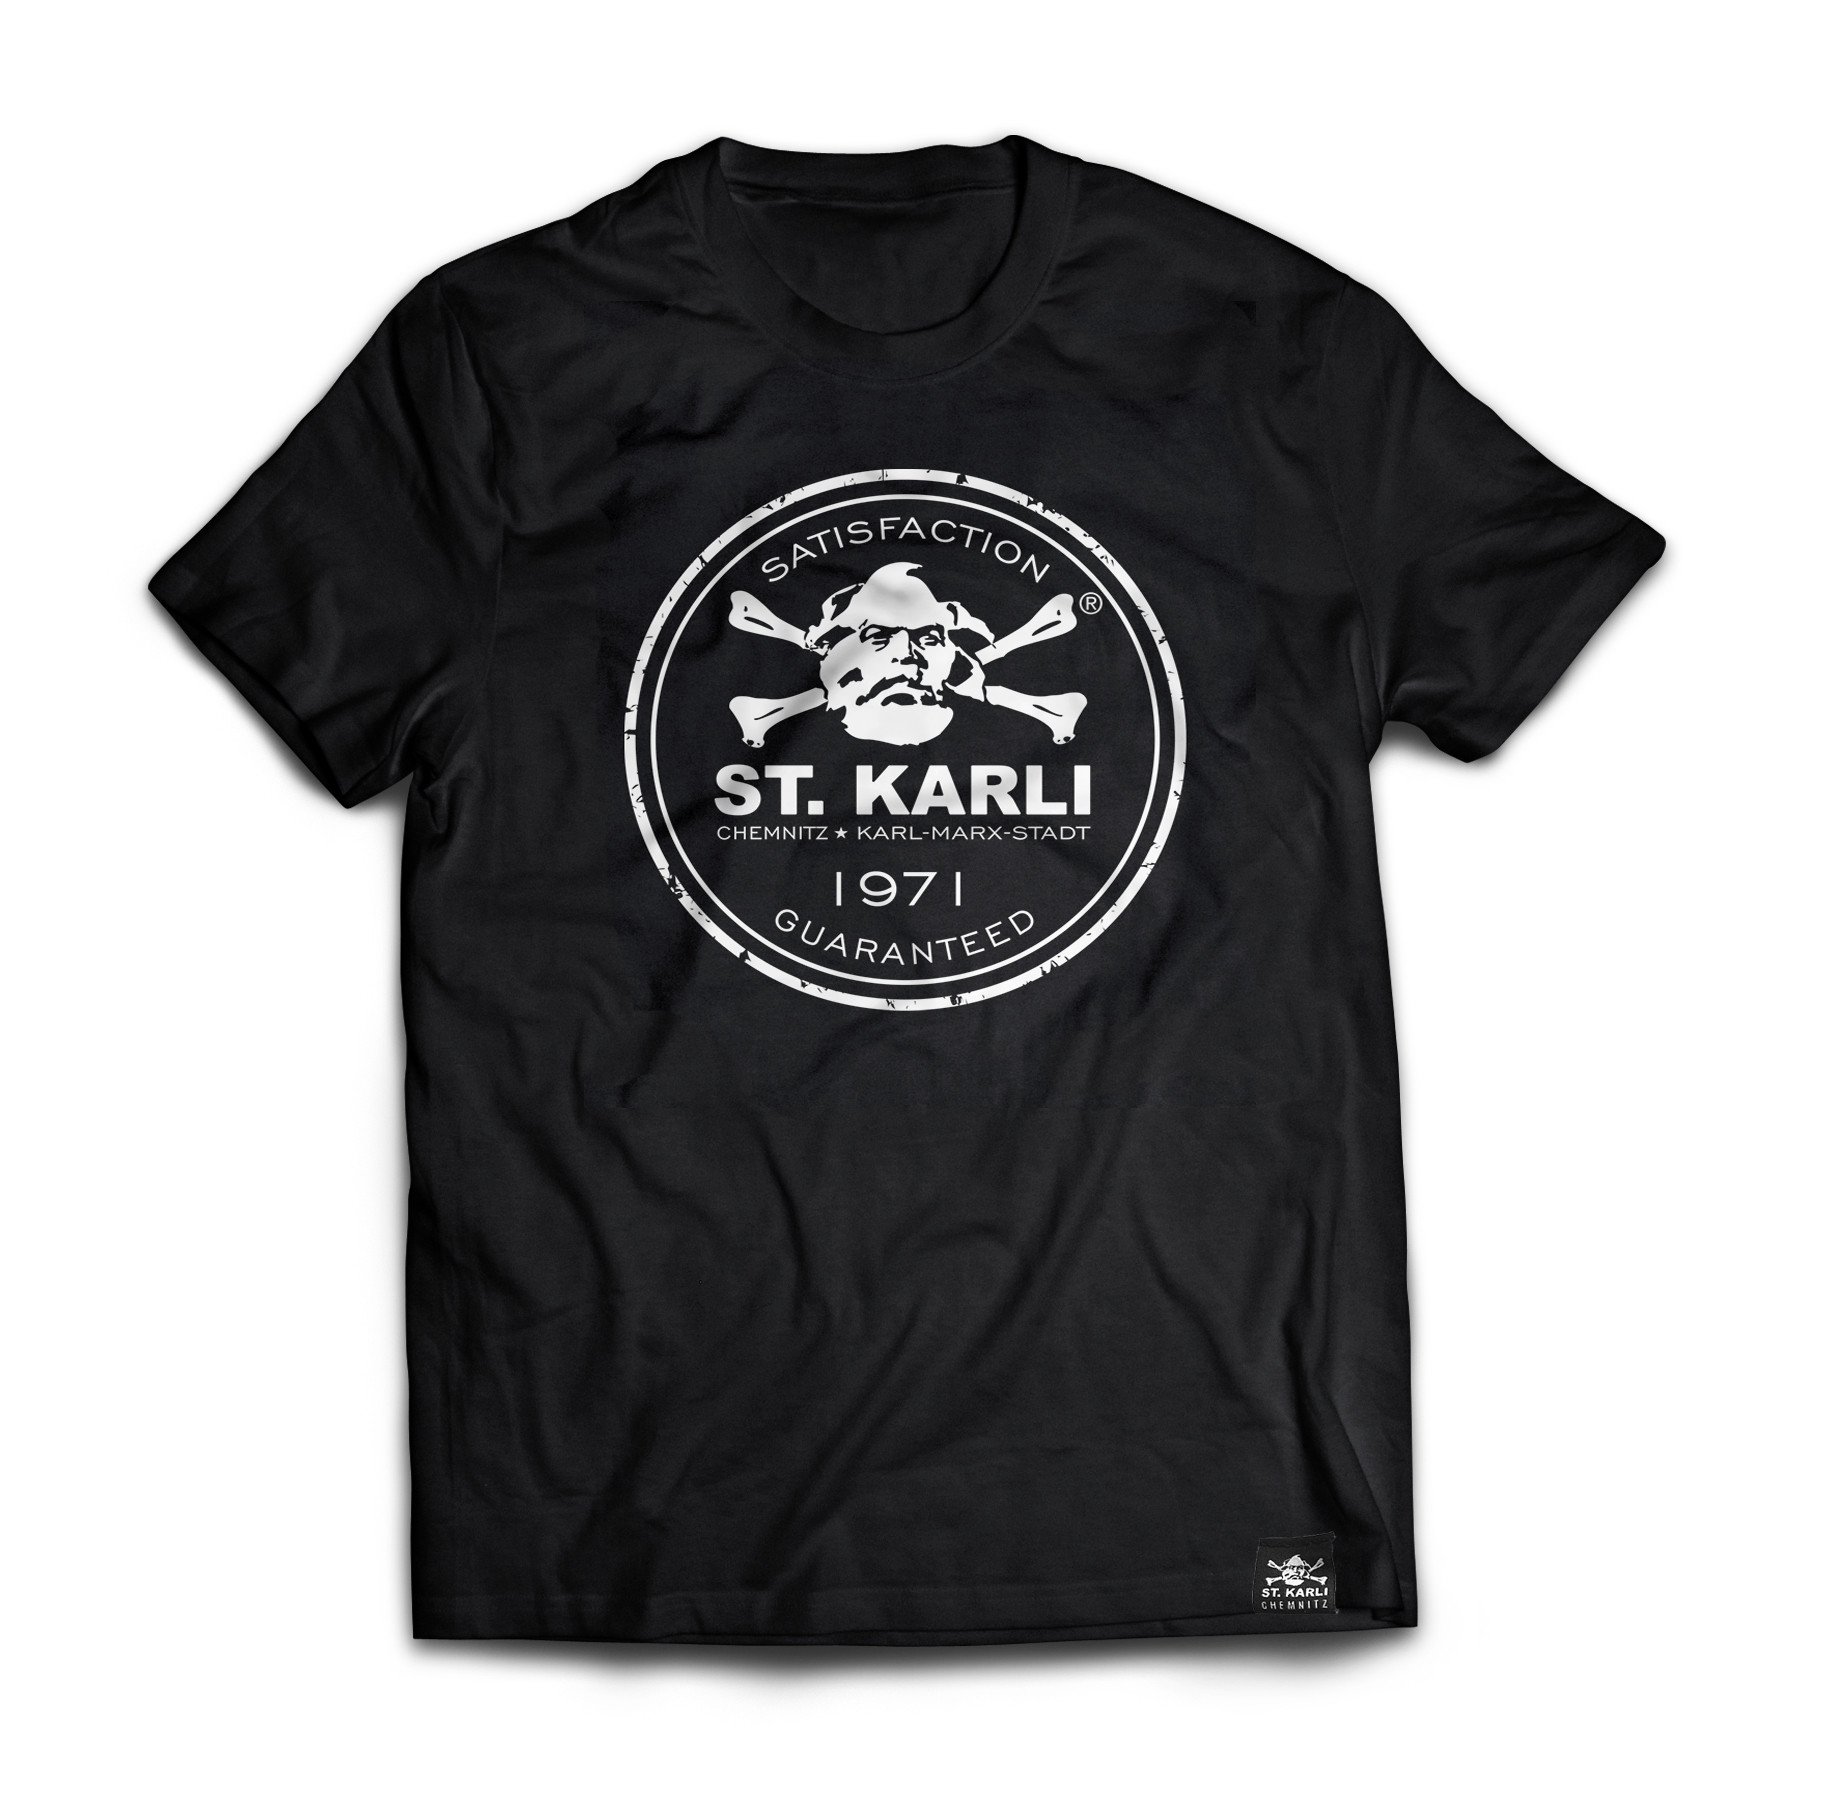 ST. KARLI T-Shirt "Edition 1971"